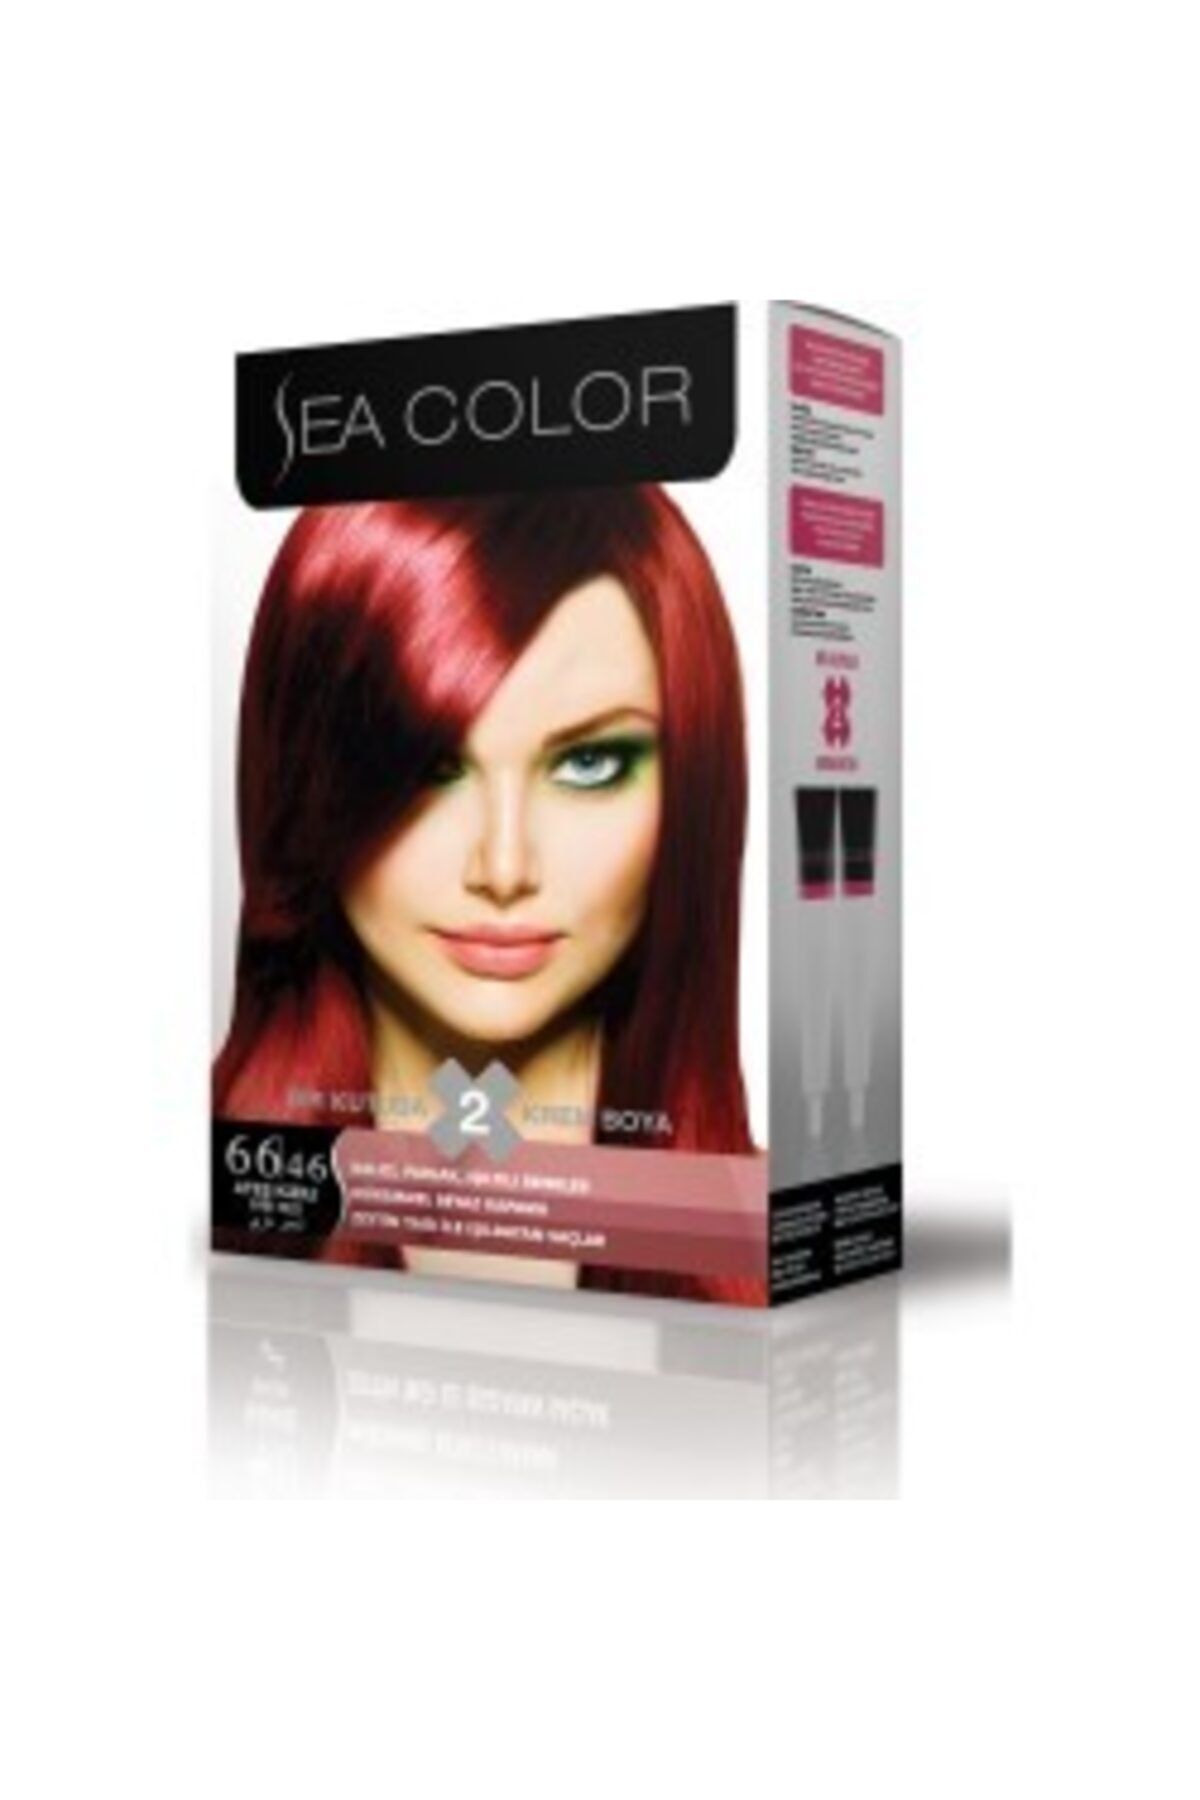 Sea Color 66,46 Ateş Kızılı 2 Li Tüp Saç Boyosı